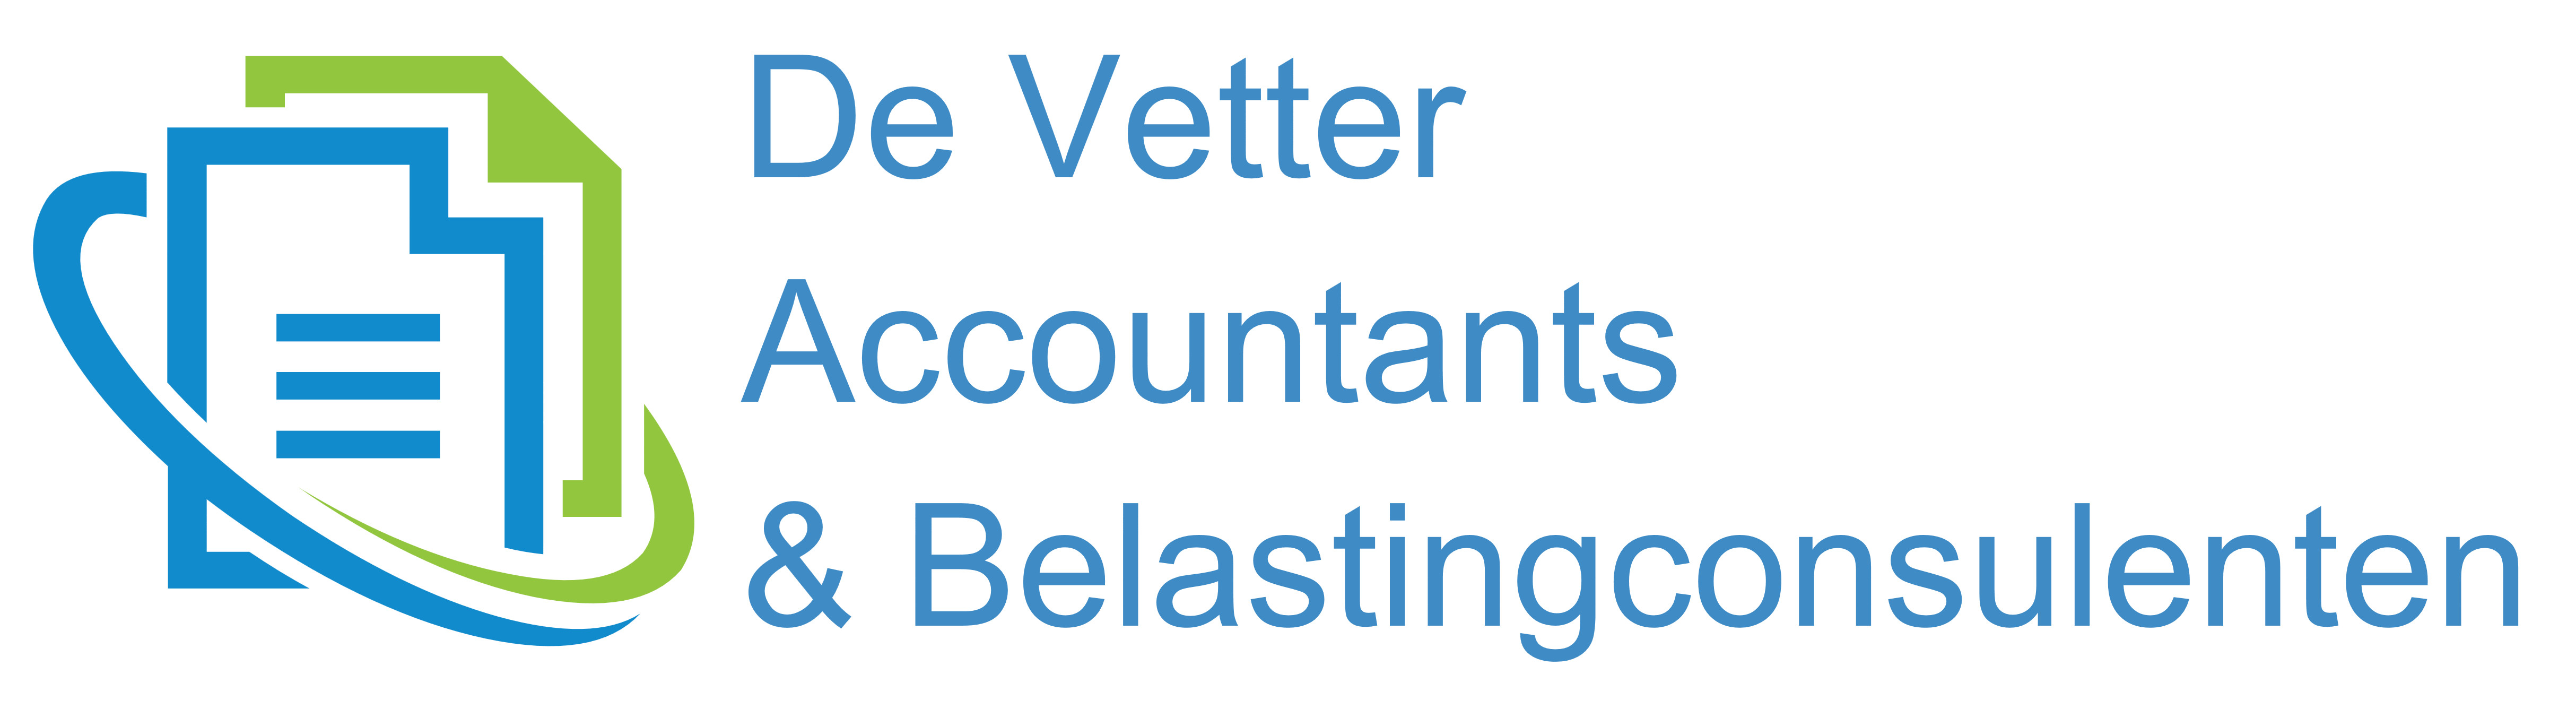 De Vetter Accountants & Belastingconsulenten bvba